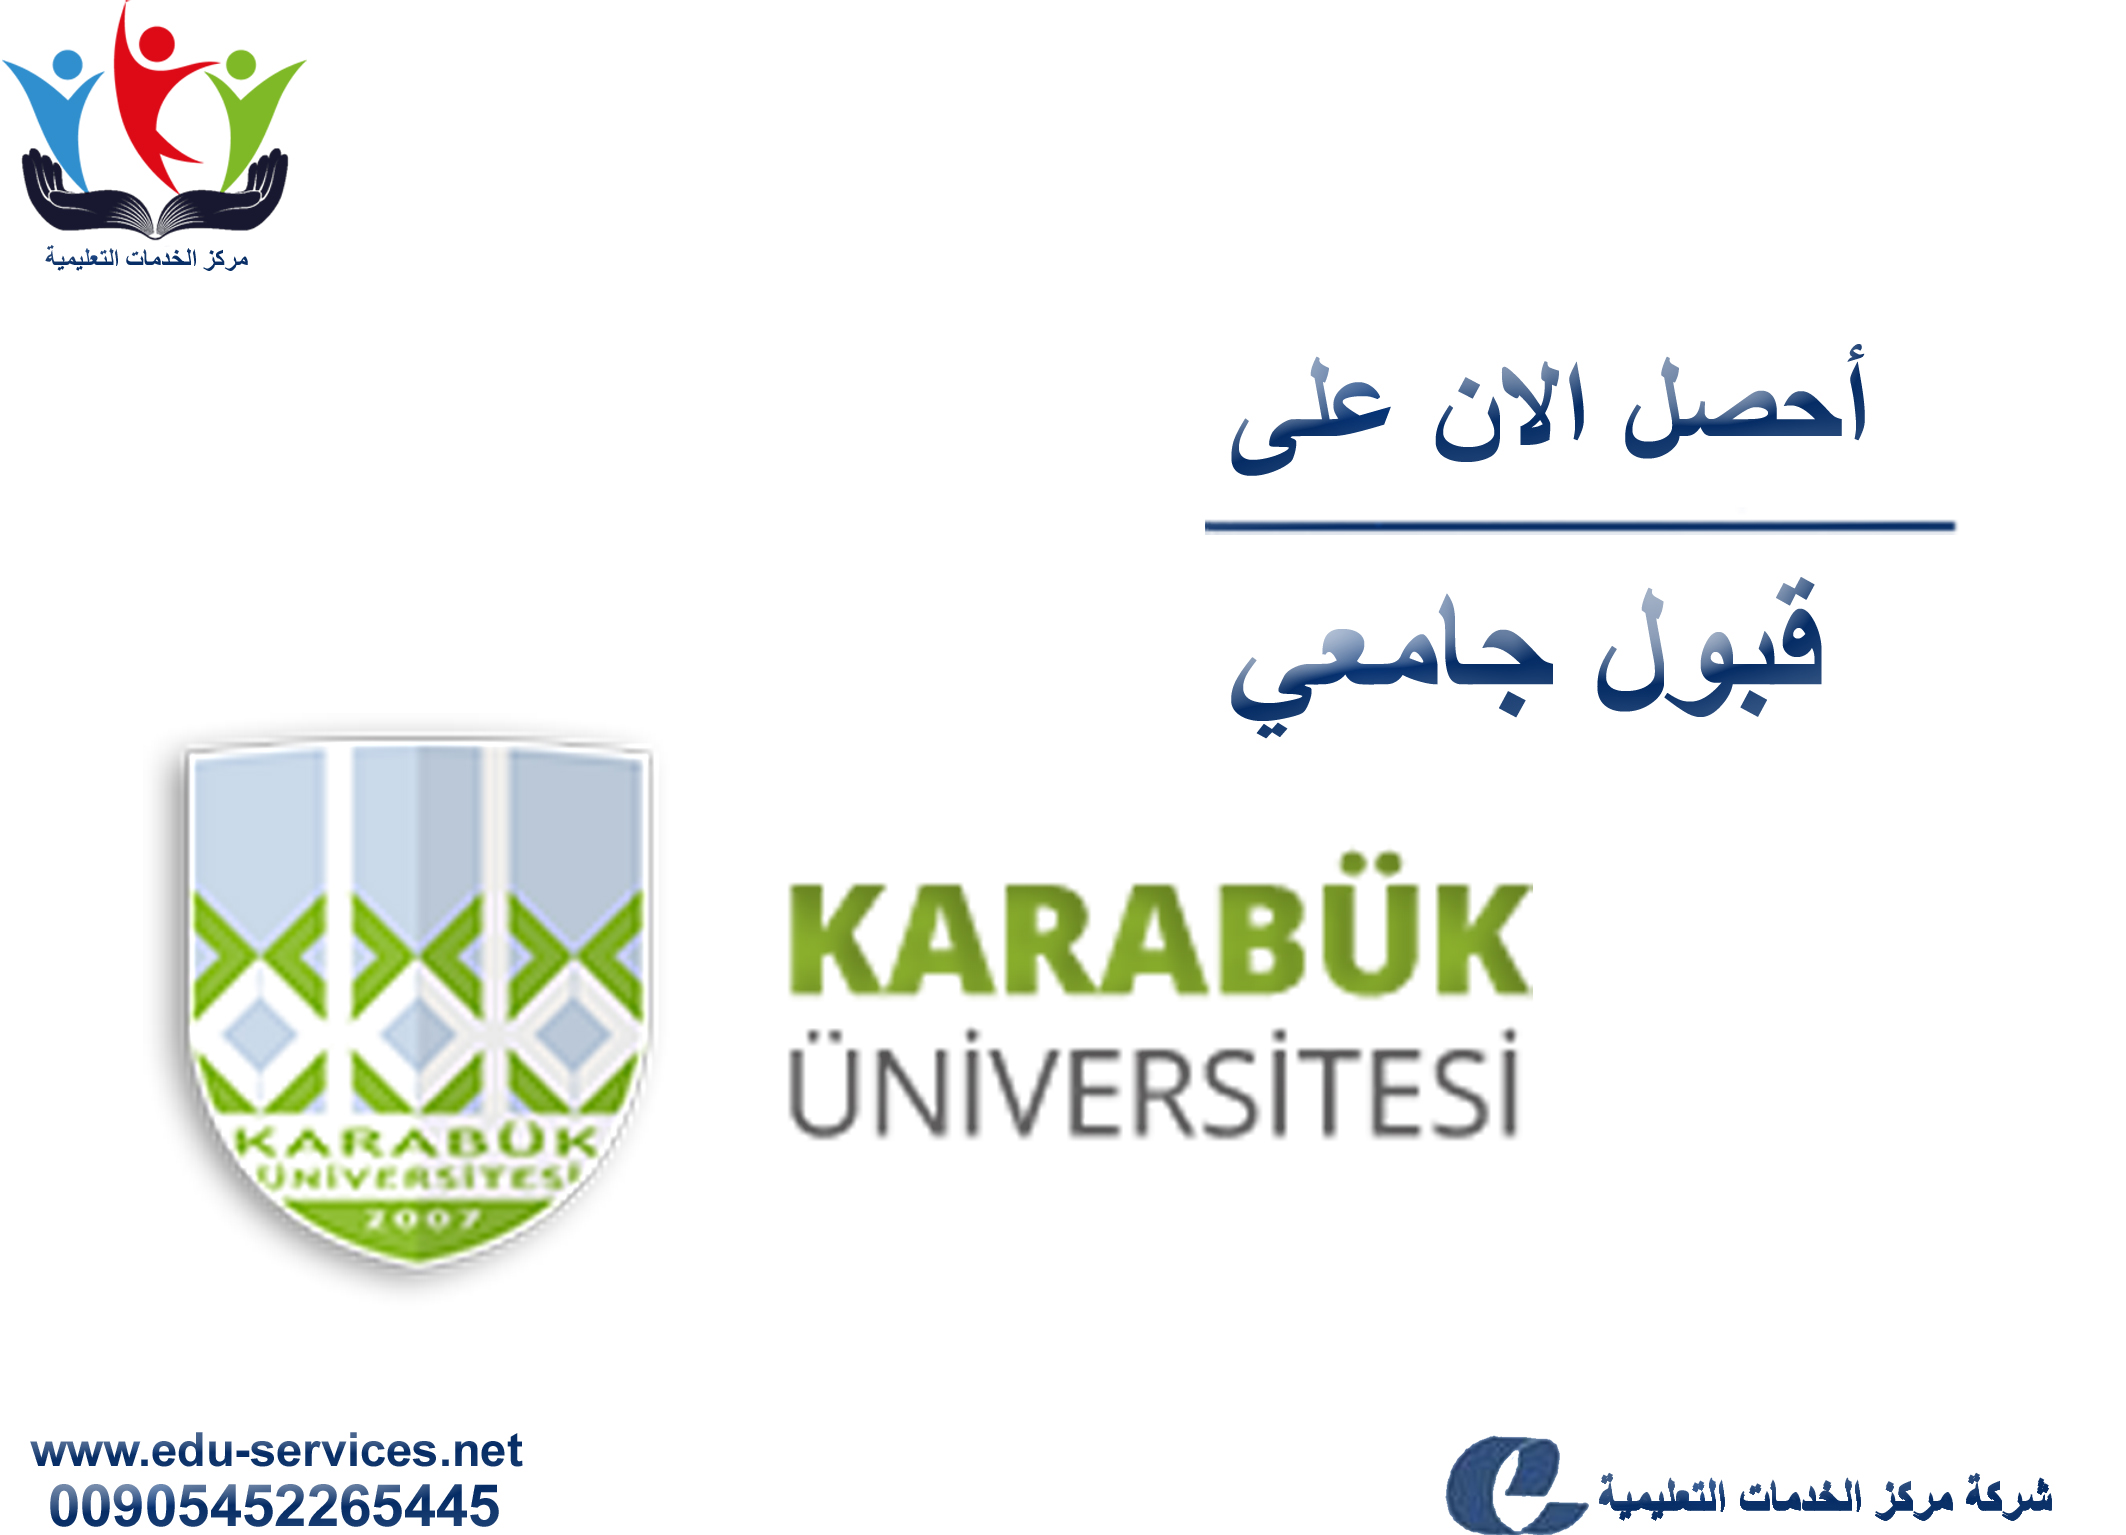 افتتاح التسجيل في جامعة كارابوك للعام 2018-2019